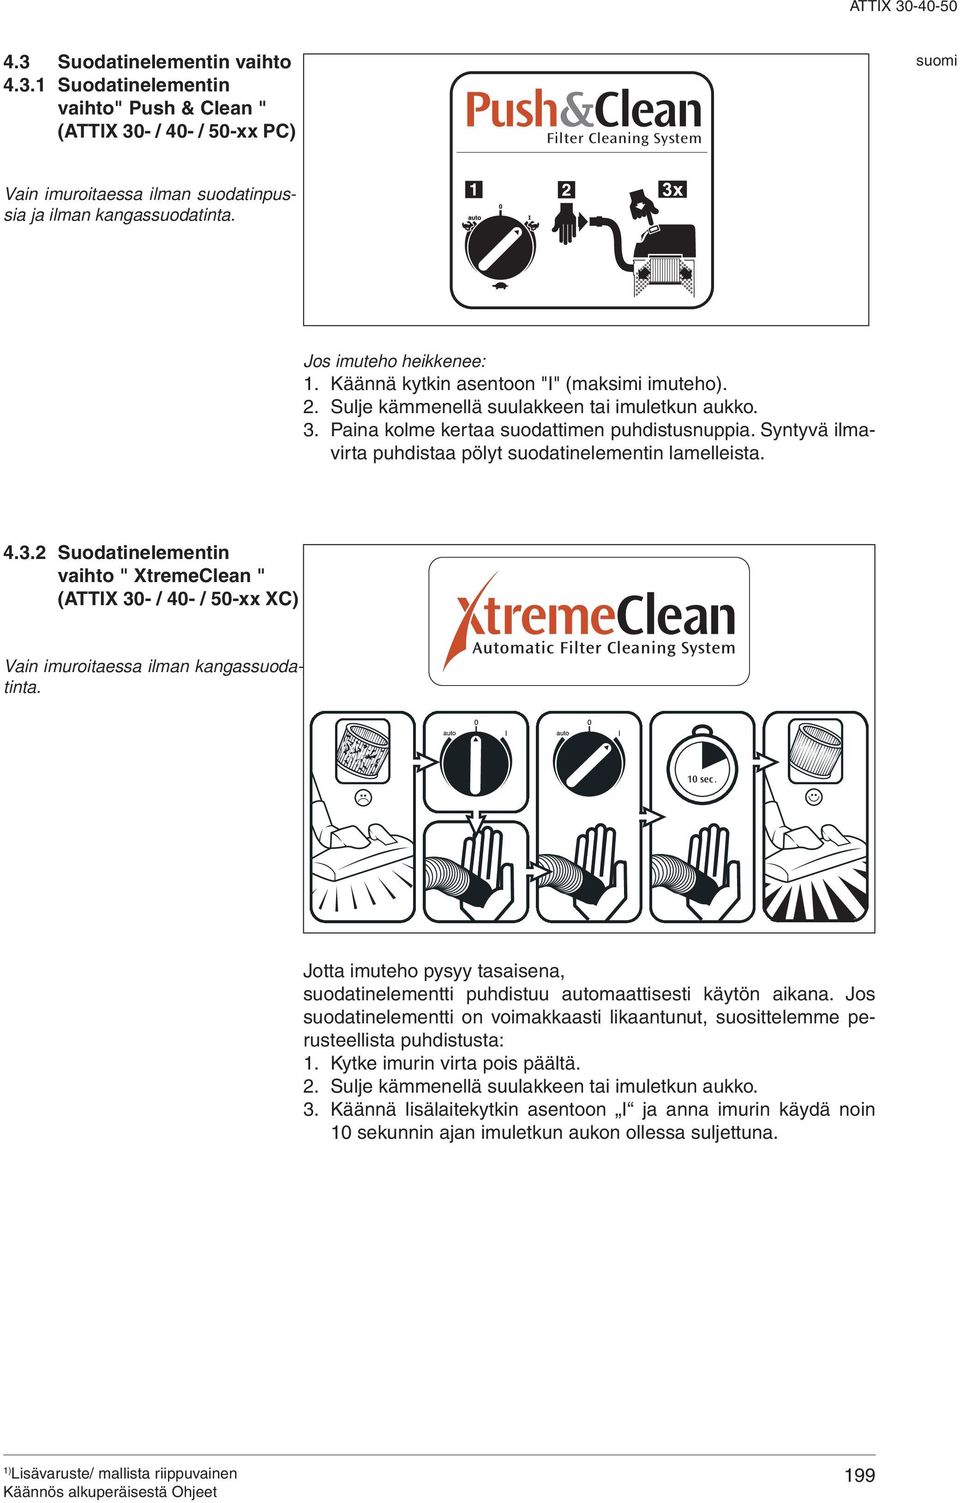 Syntyvä ilmavirta puhdistaa pölyt suodatinelementin lamelleista. 4.3.2 Suodatinelementin vaihto " XtremeClean " (TTIX 30- / 40- / 50-xx XC) Vain imuroitaessa ilman kangassuodatinta. 10 sec.